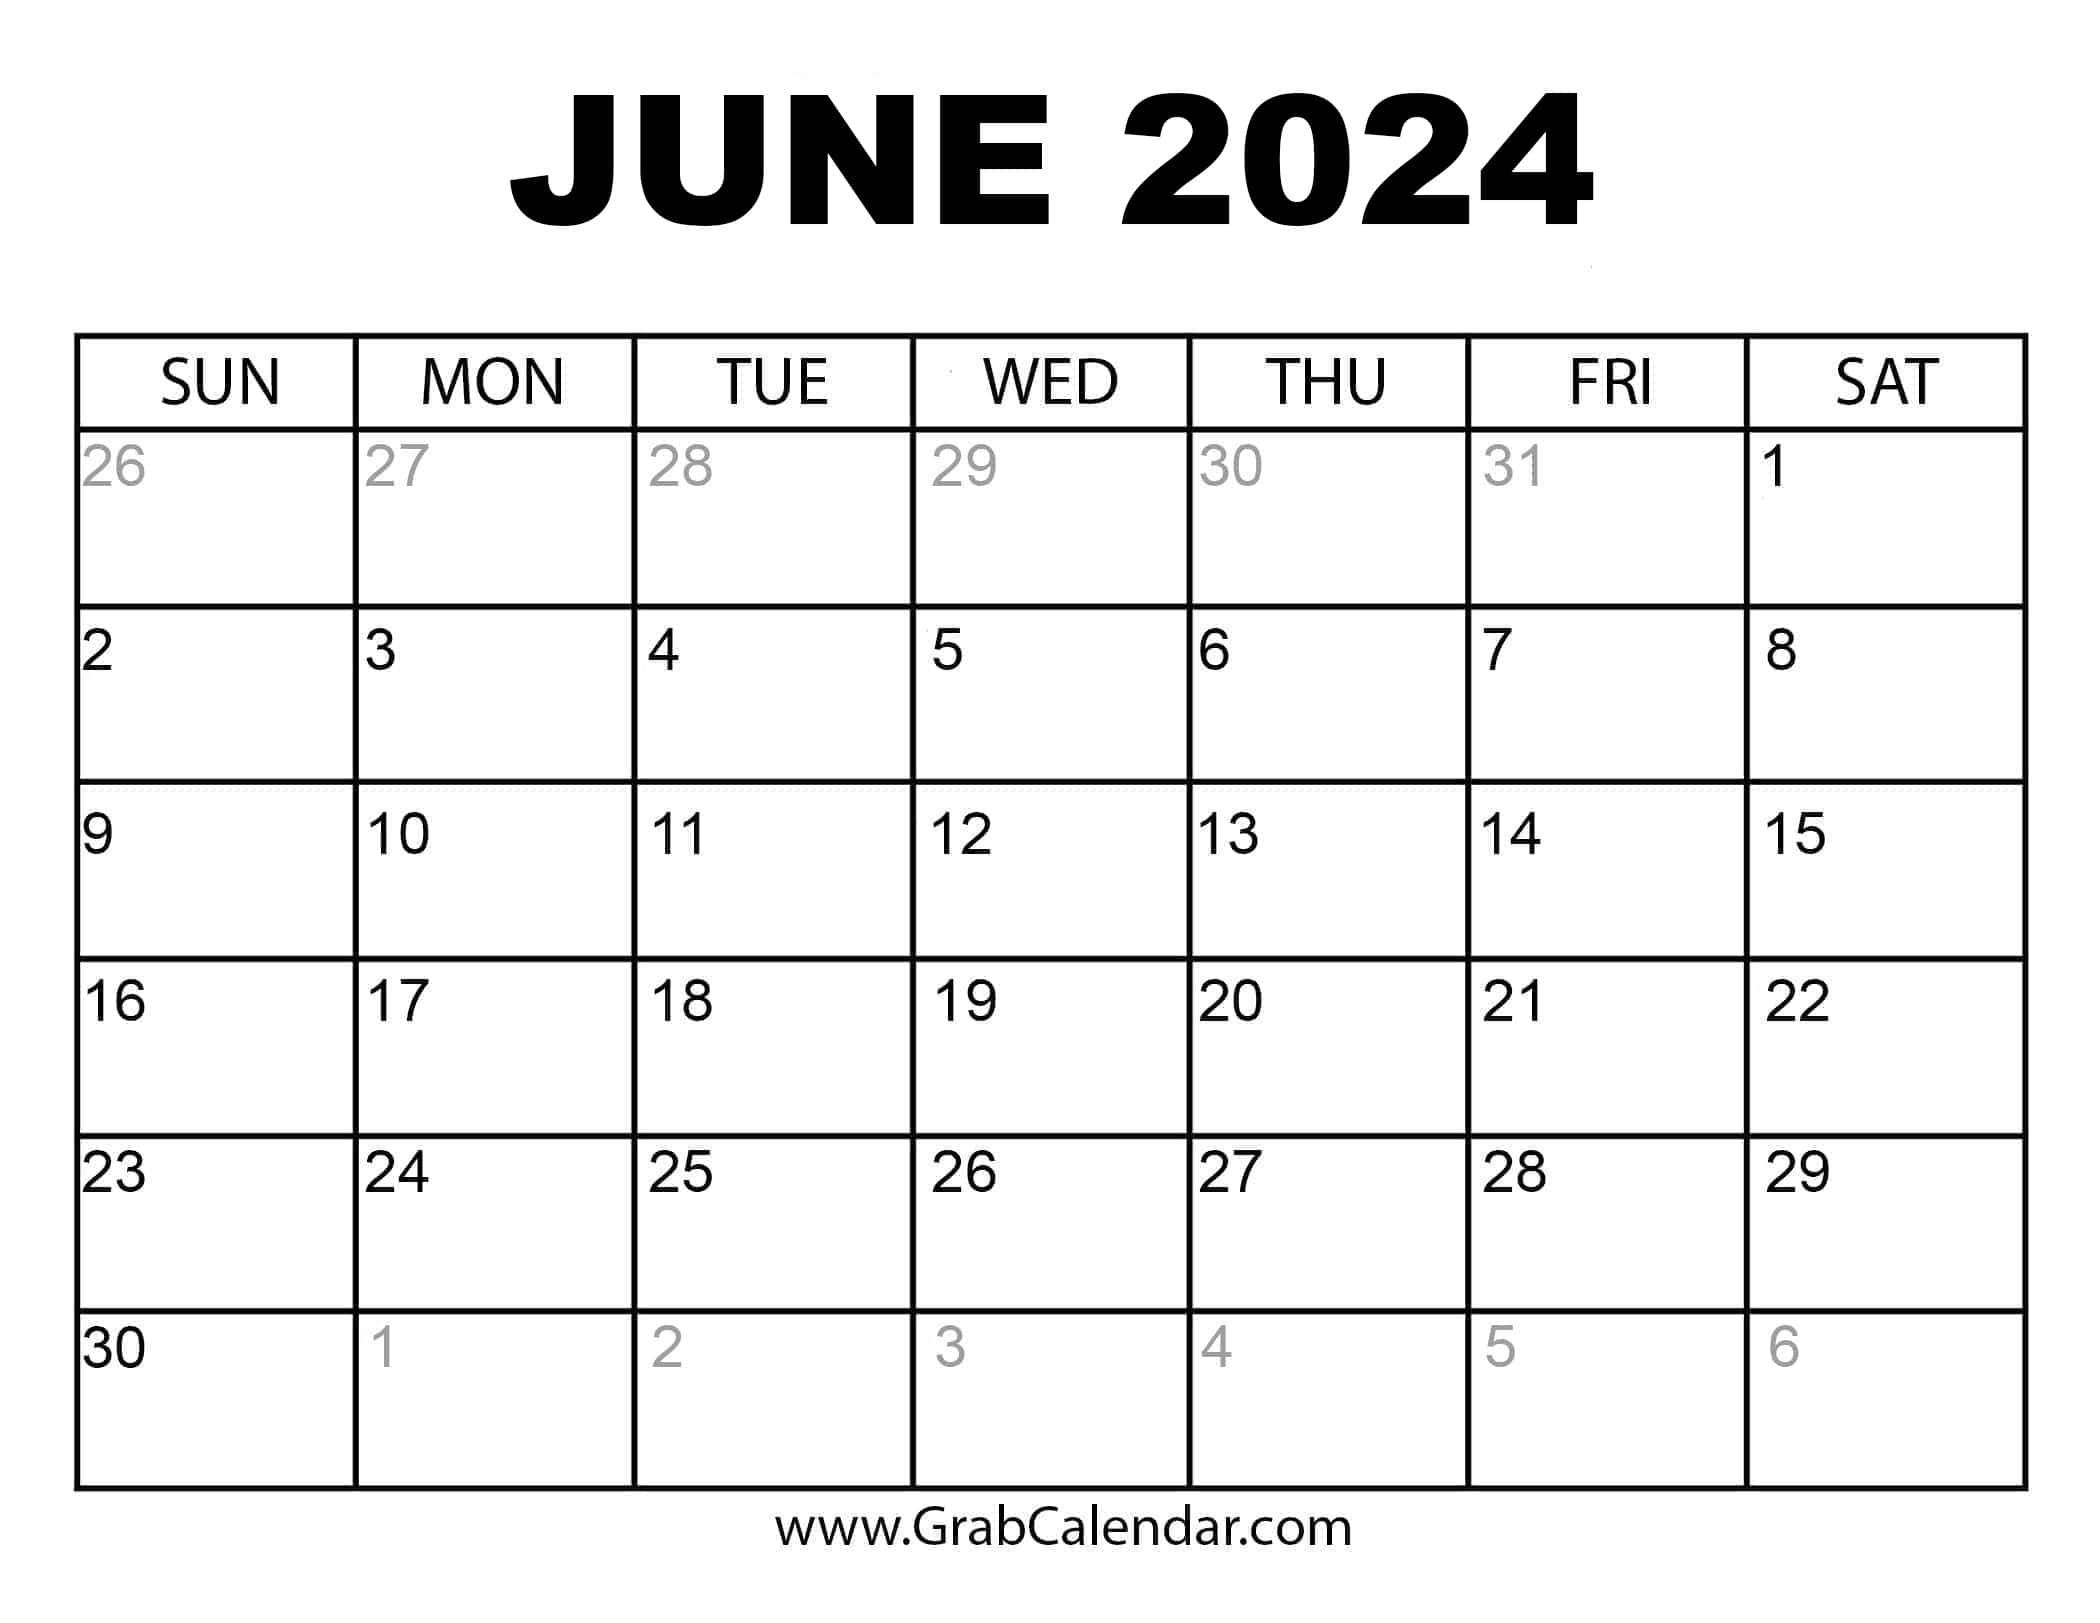 Calendar June 2024 With Holidays Brana Chryste